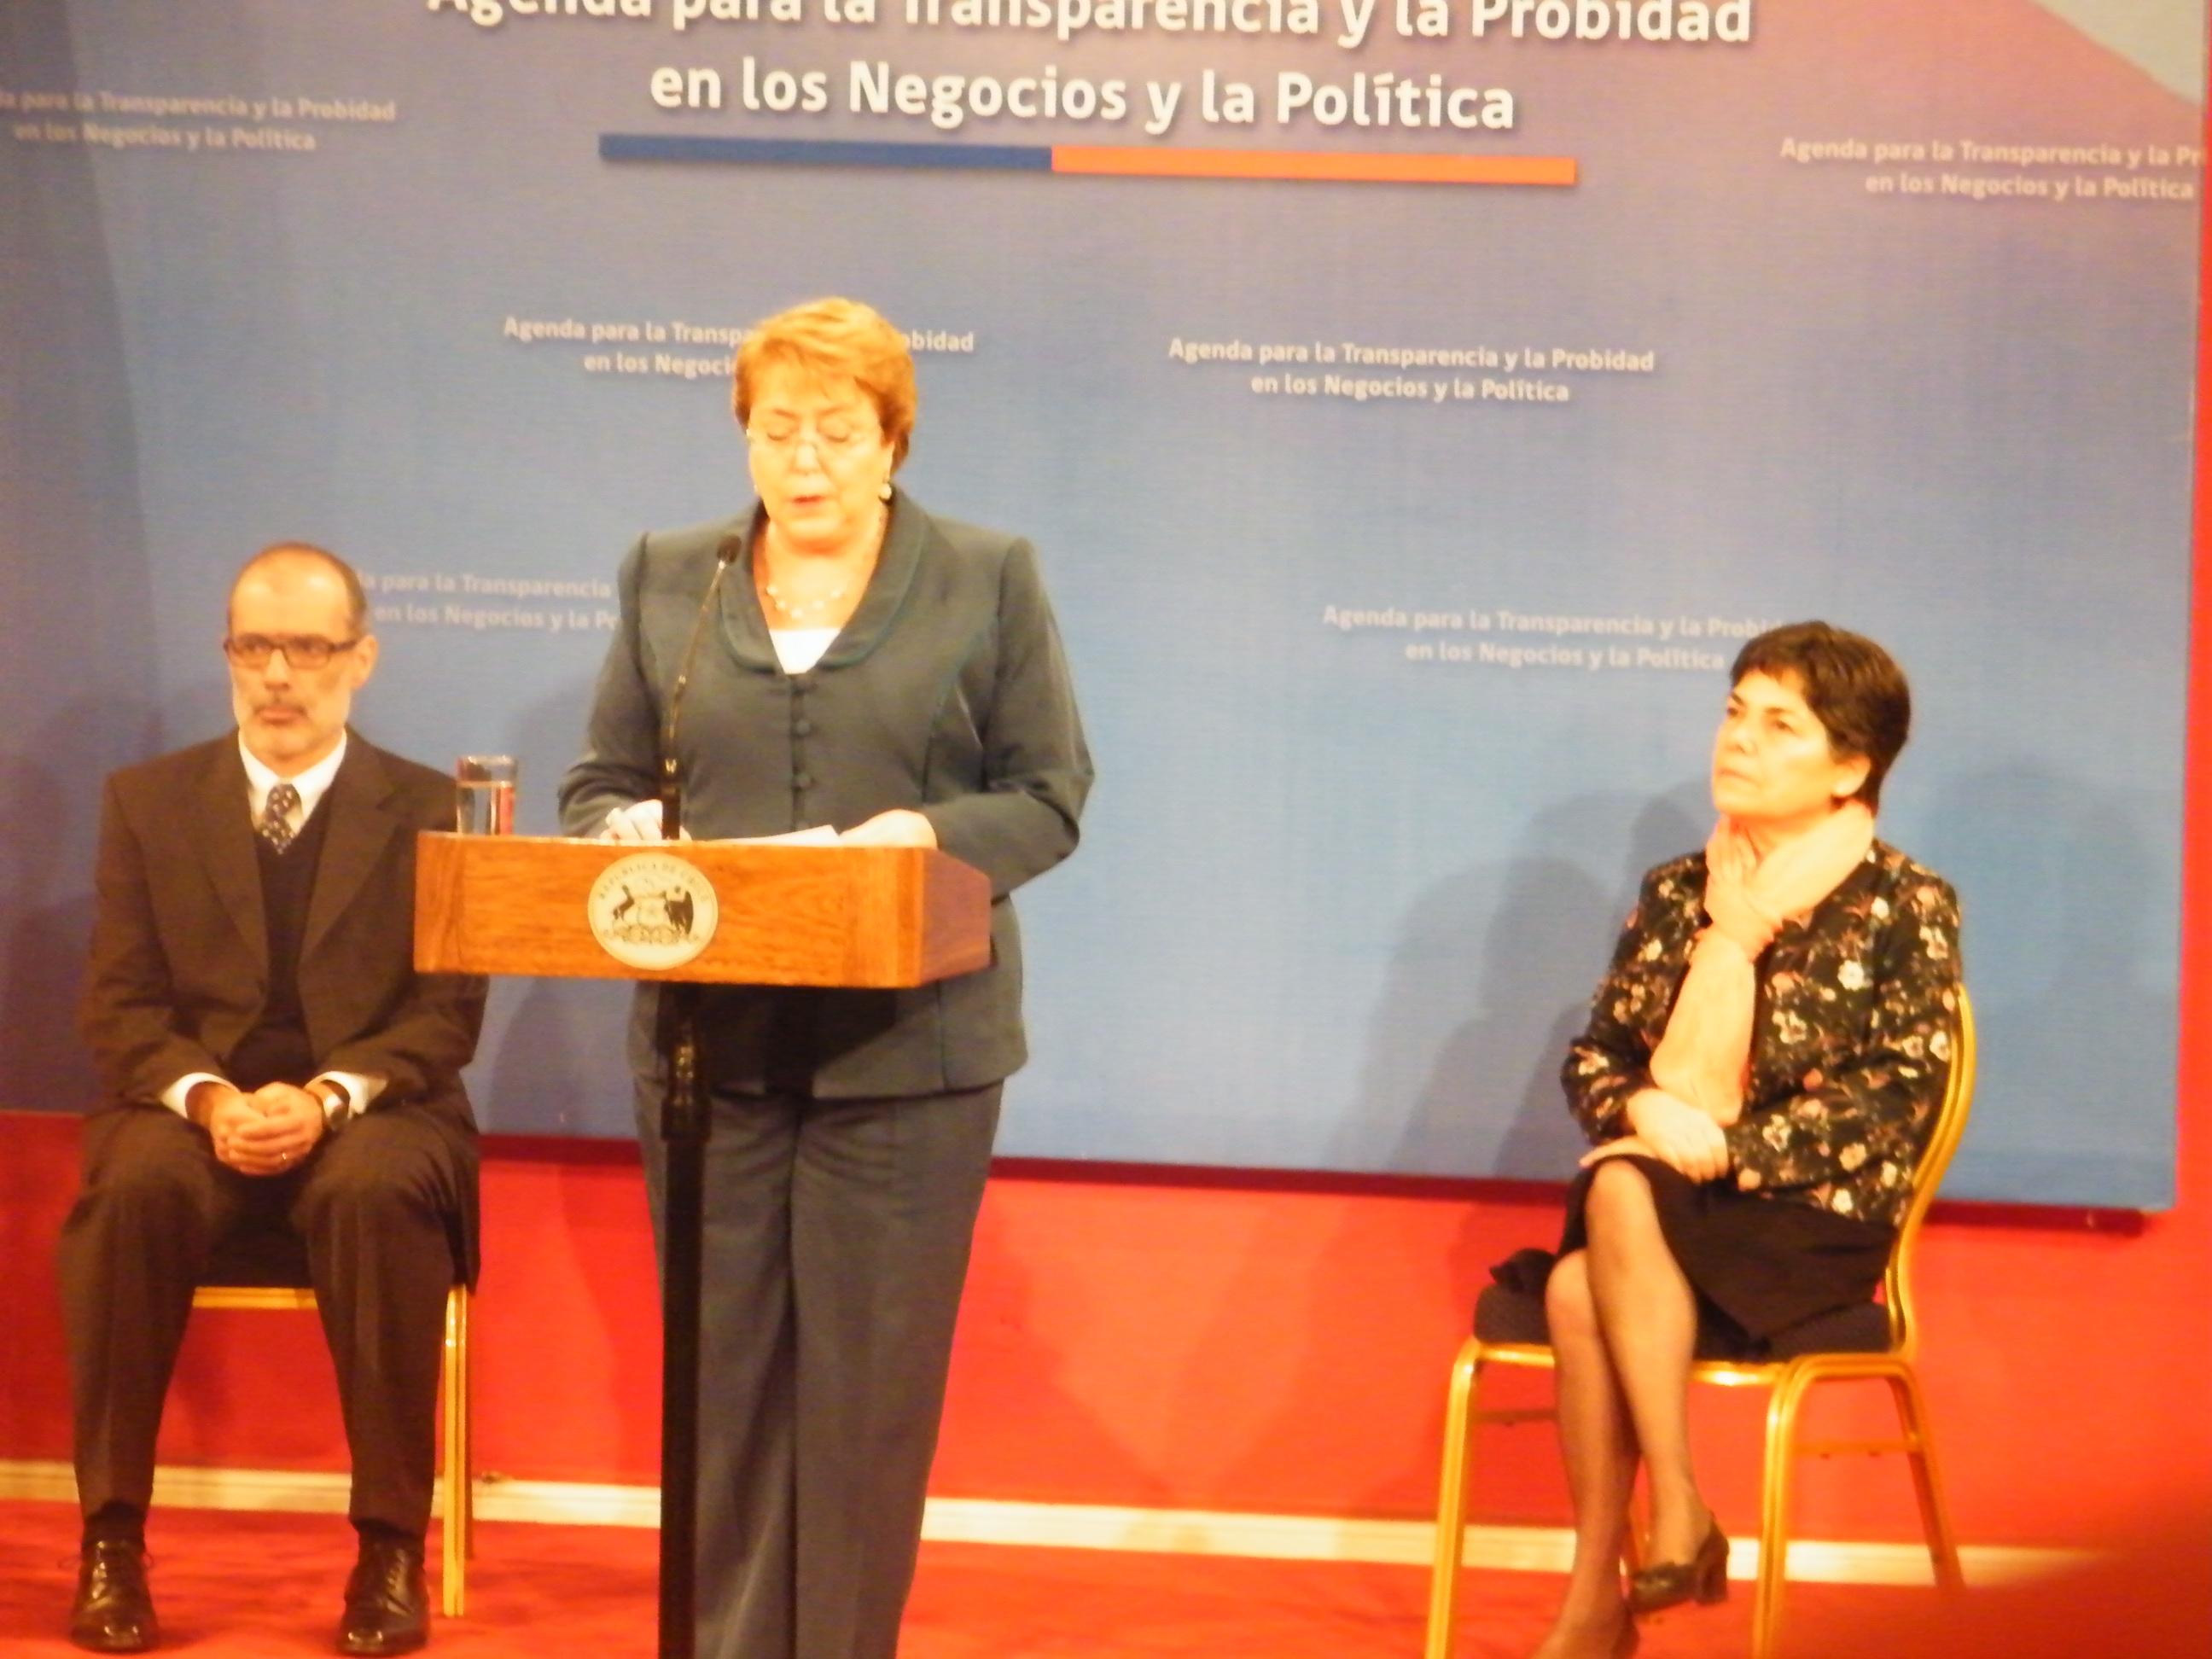 Presidenta Bachelet explicando los proyectos de ley.